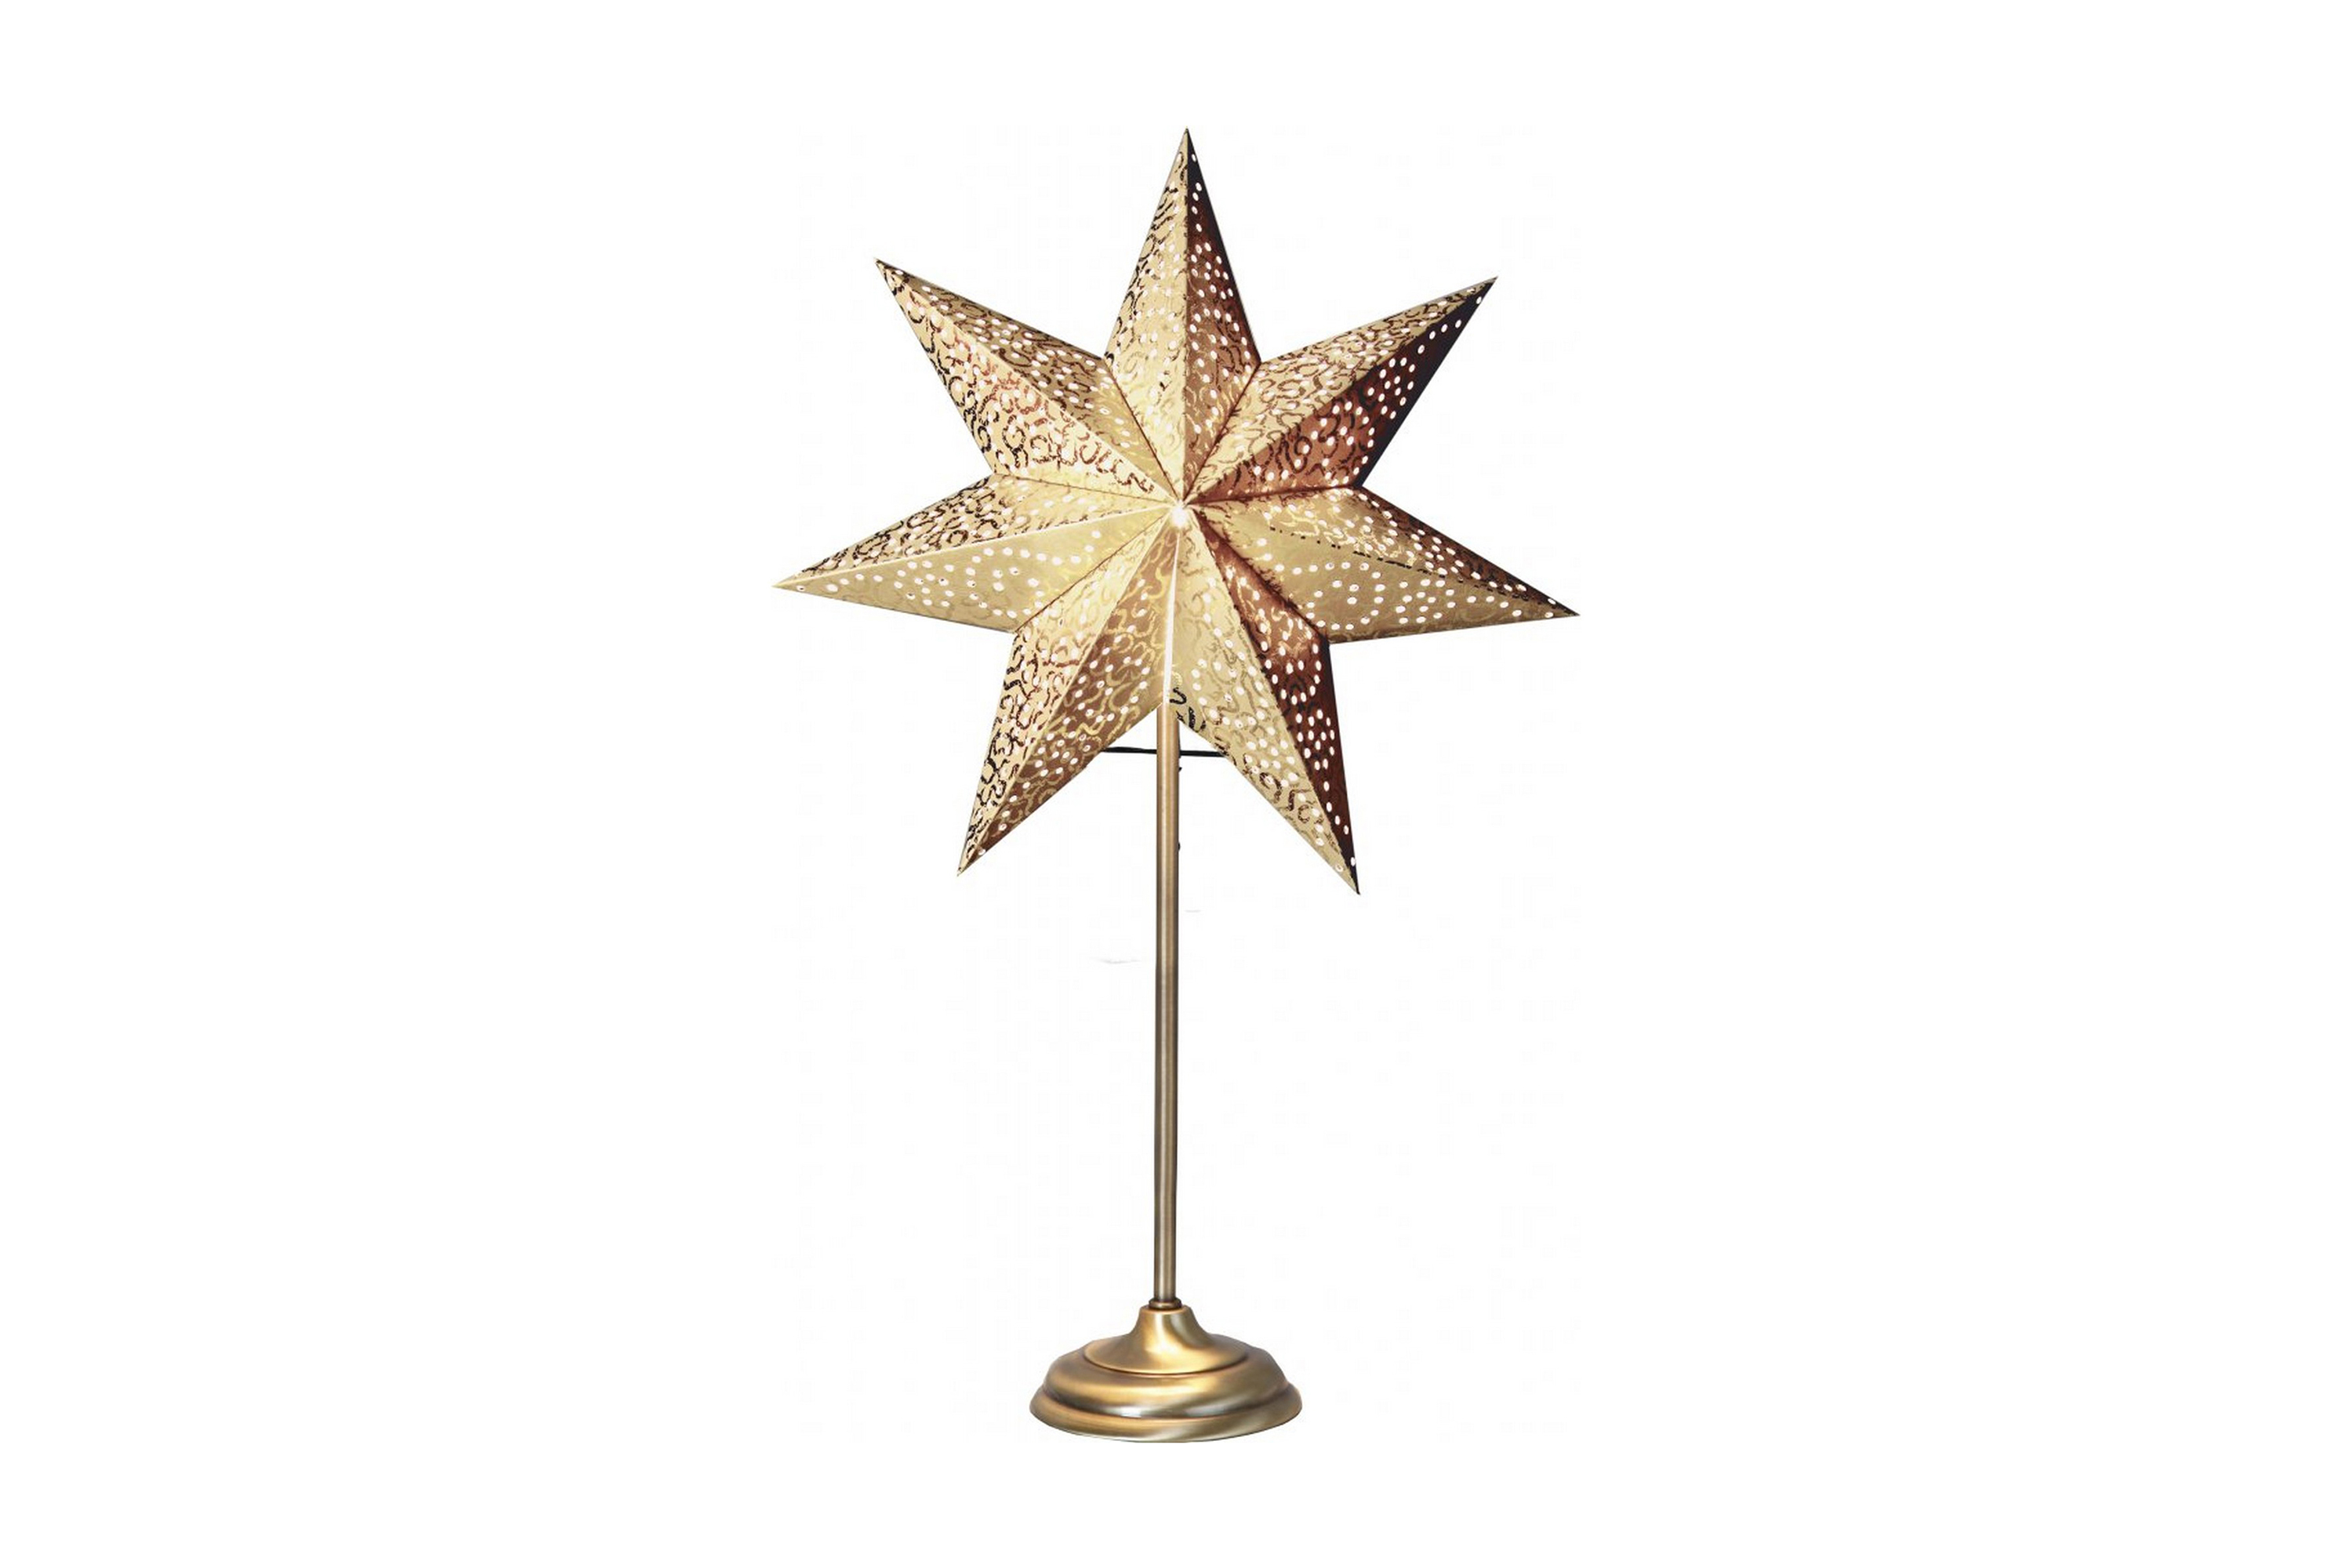 Star Trading Antique Adventsstjärna 55 cm – Star Trading